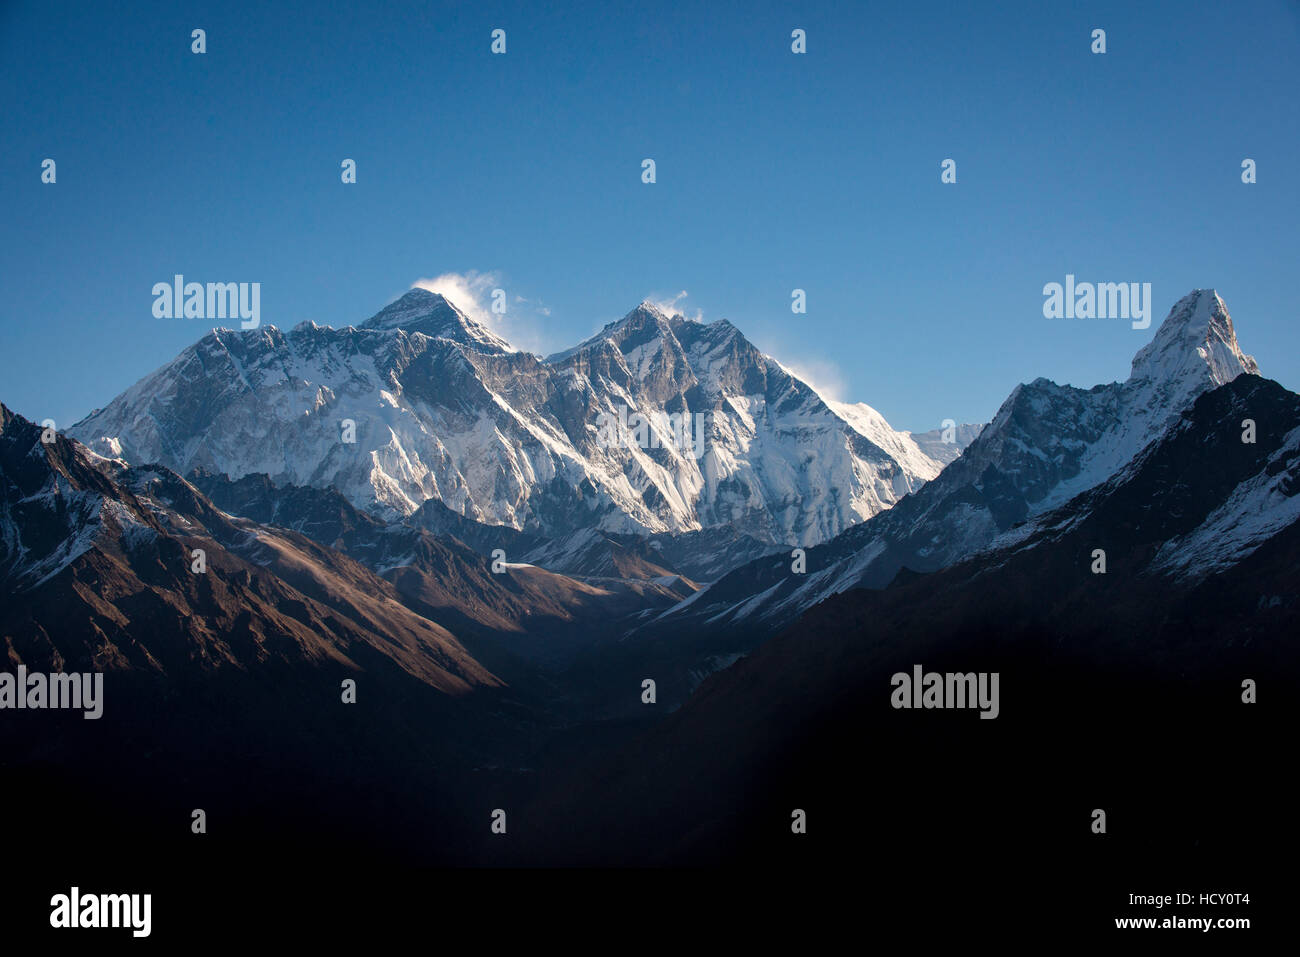 Vue de l'Everest, sommet lointain à gauche derrière la Nuptse-Lhotse Ridge, du Damaraland, région de Khumbu, Népal Banque D'Images